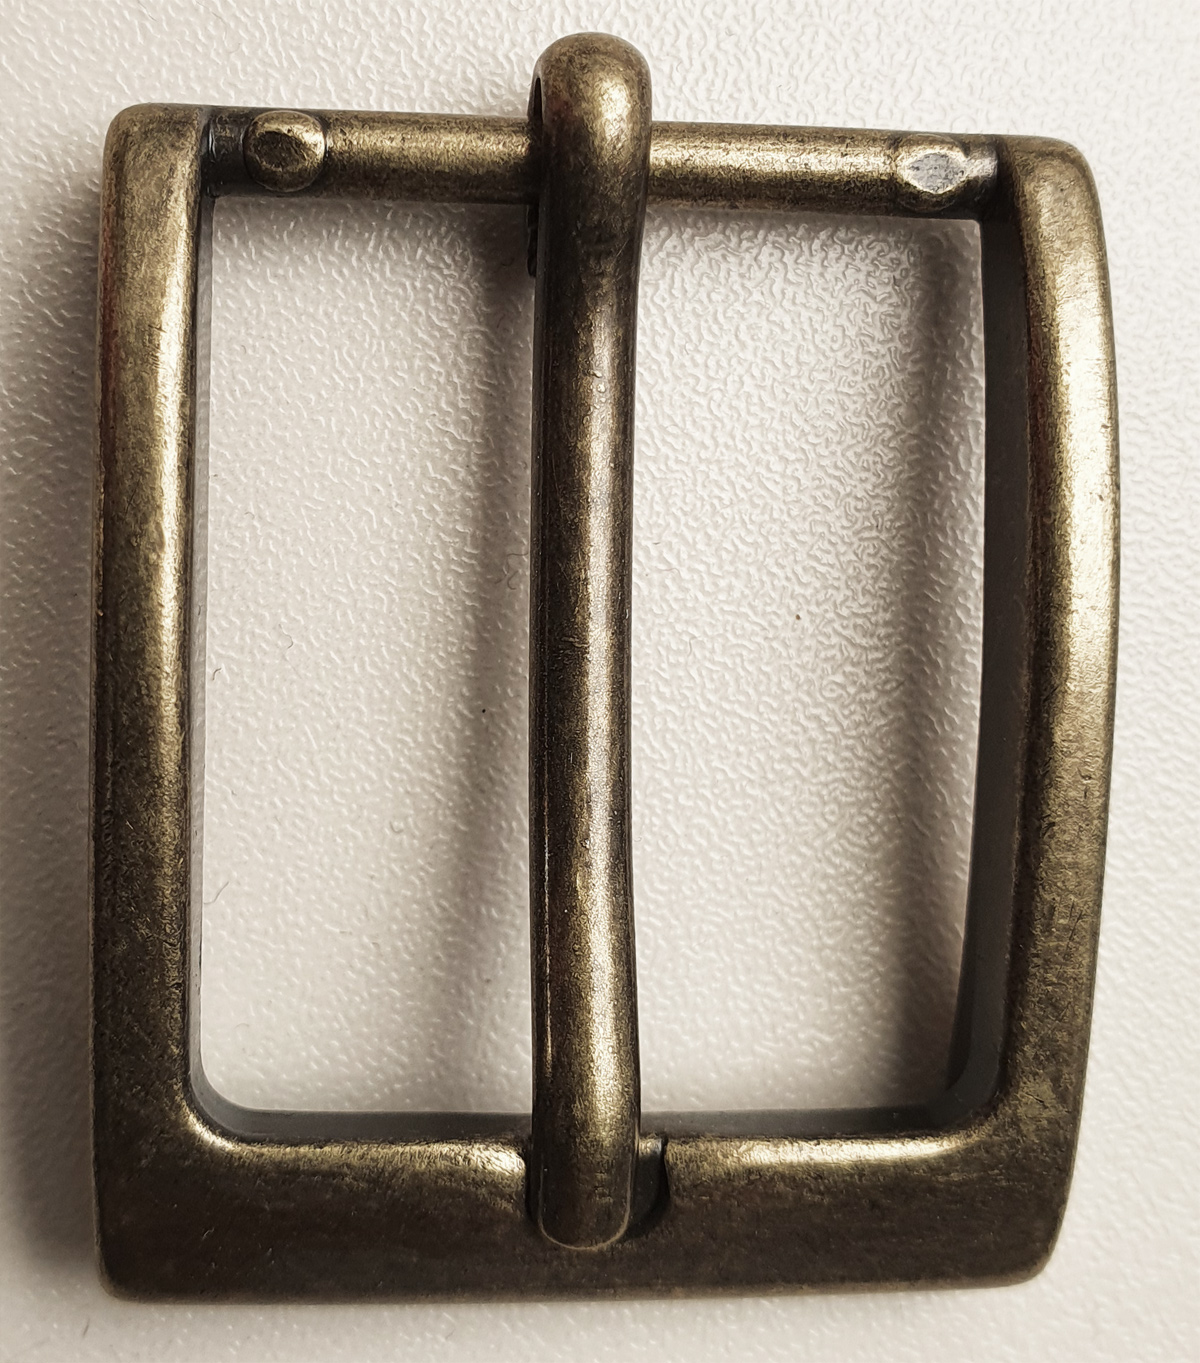 Schnalle für Gürtel 25-35 mm breit, Schließe Metall, innen 25 mm, altmessing, außen 40x32mm